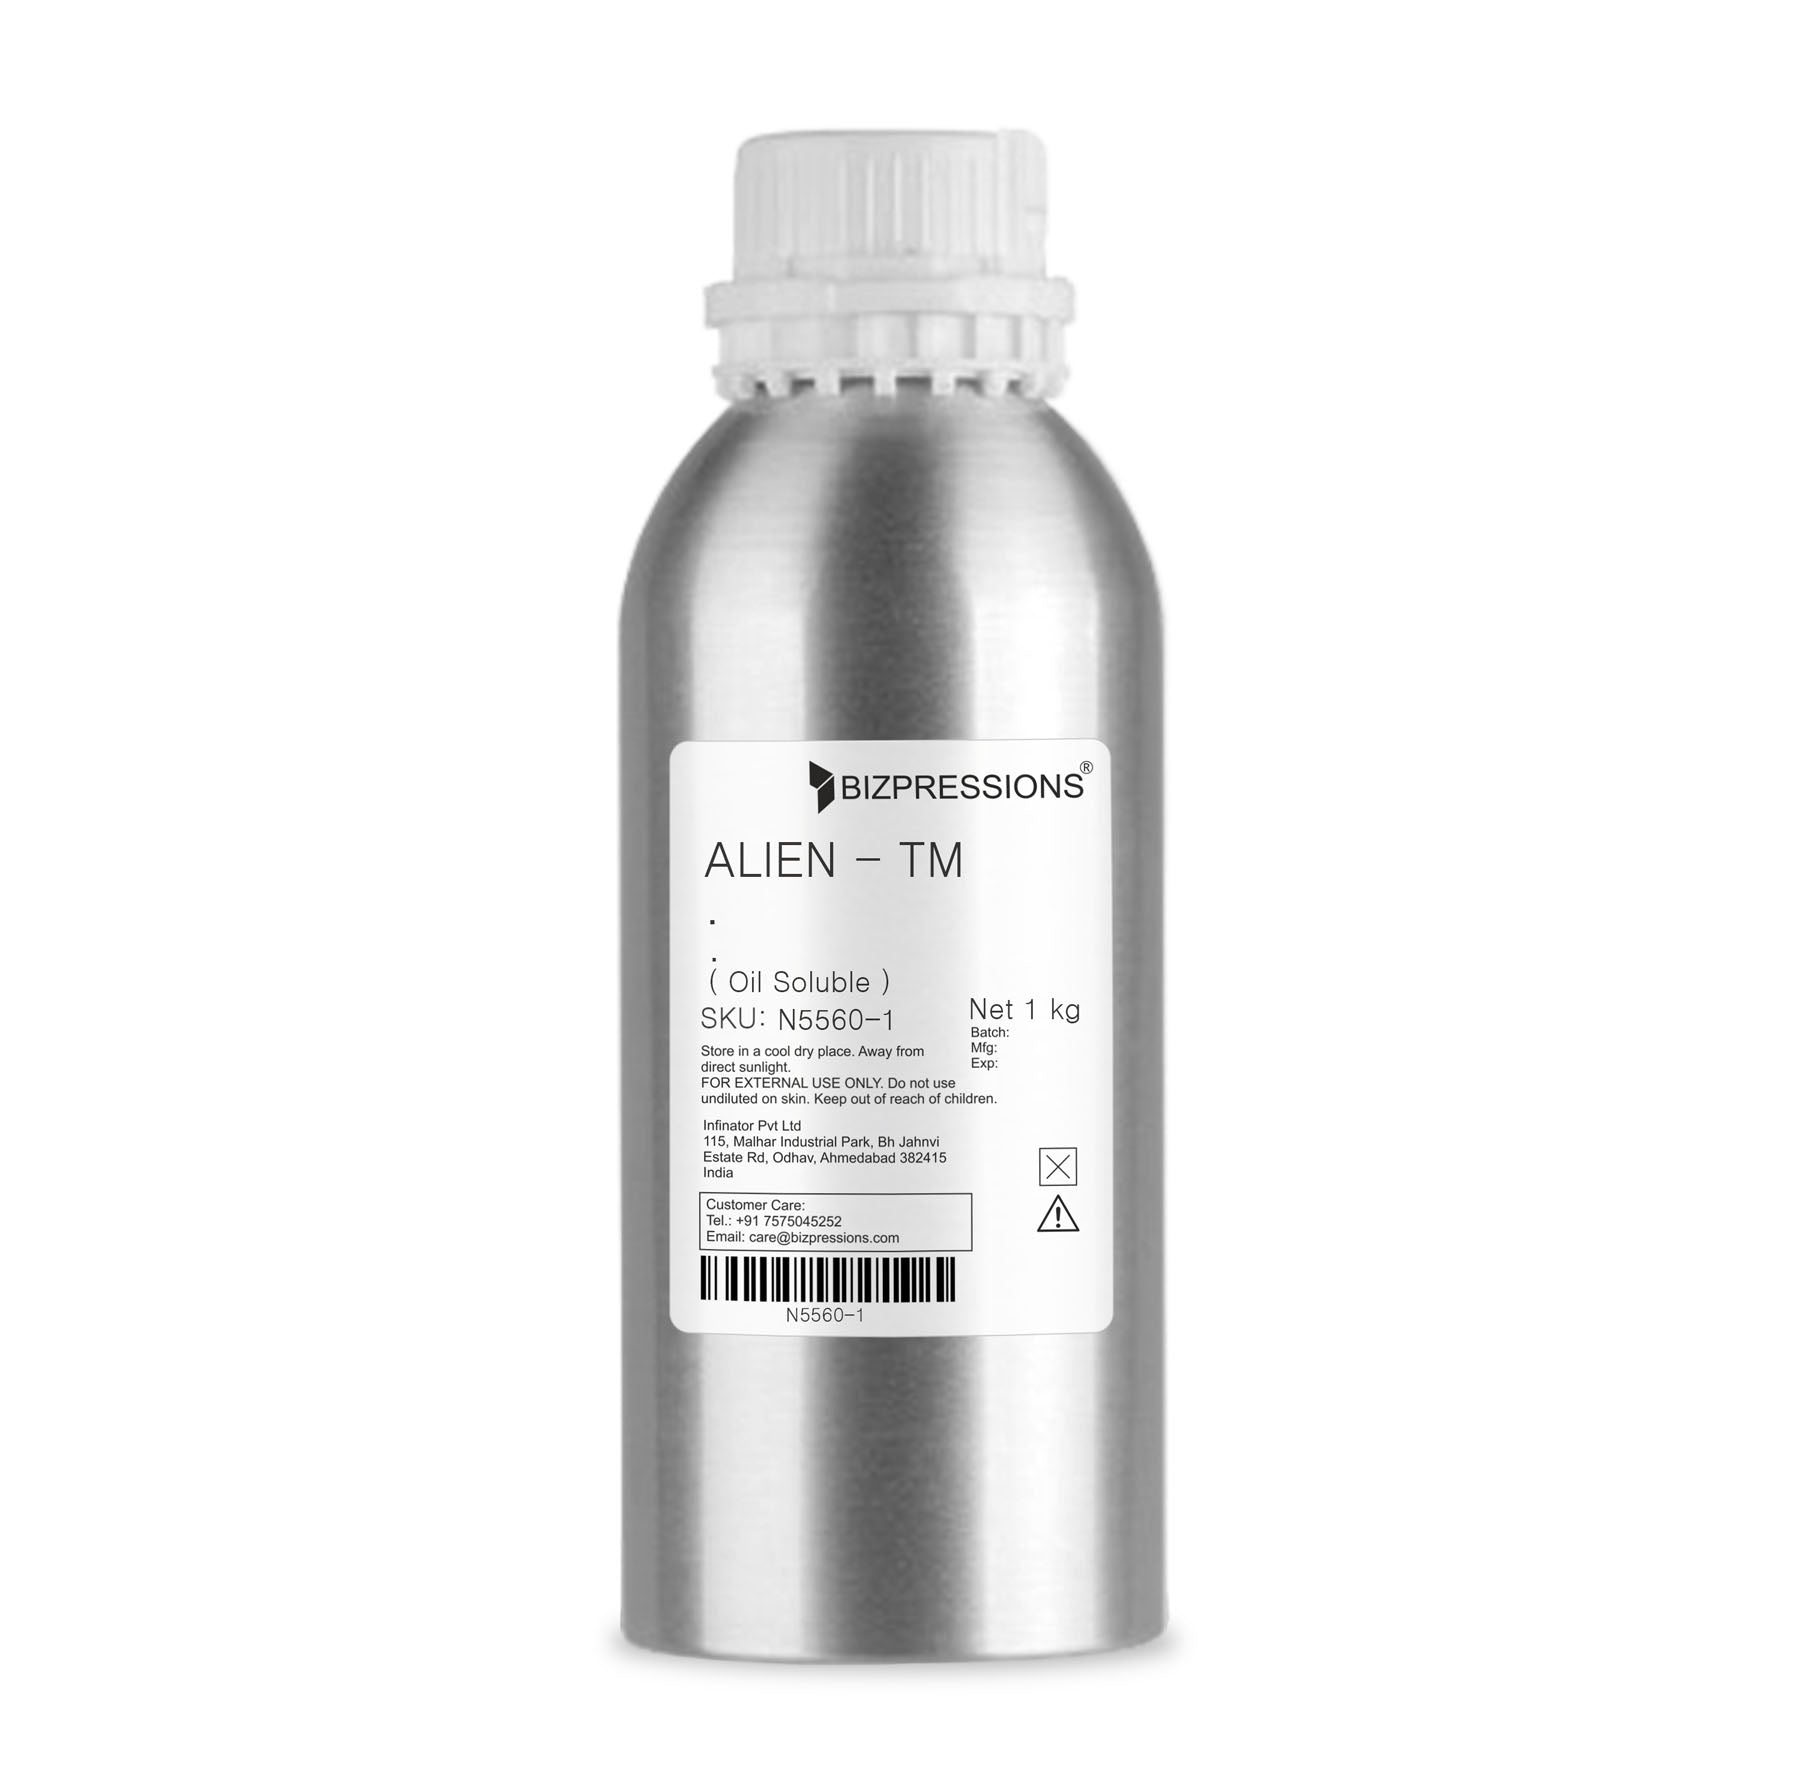 ALIEN - TM - Fragrance ( Oil Soluble ) - 1 kg